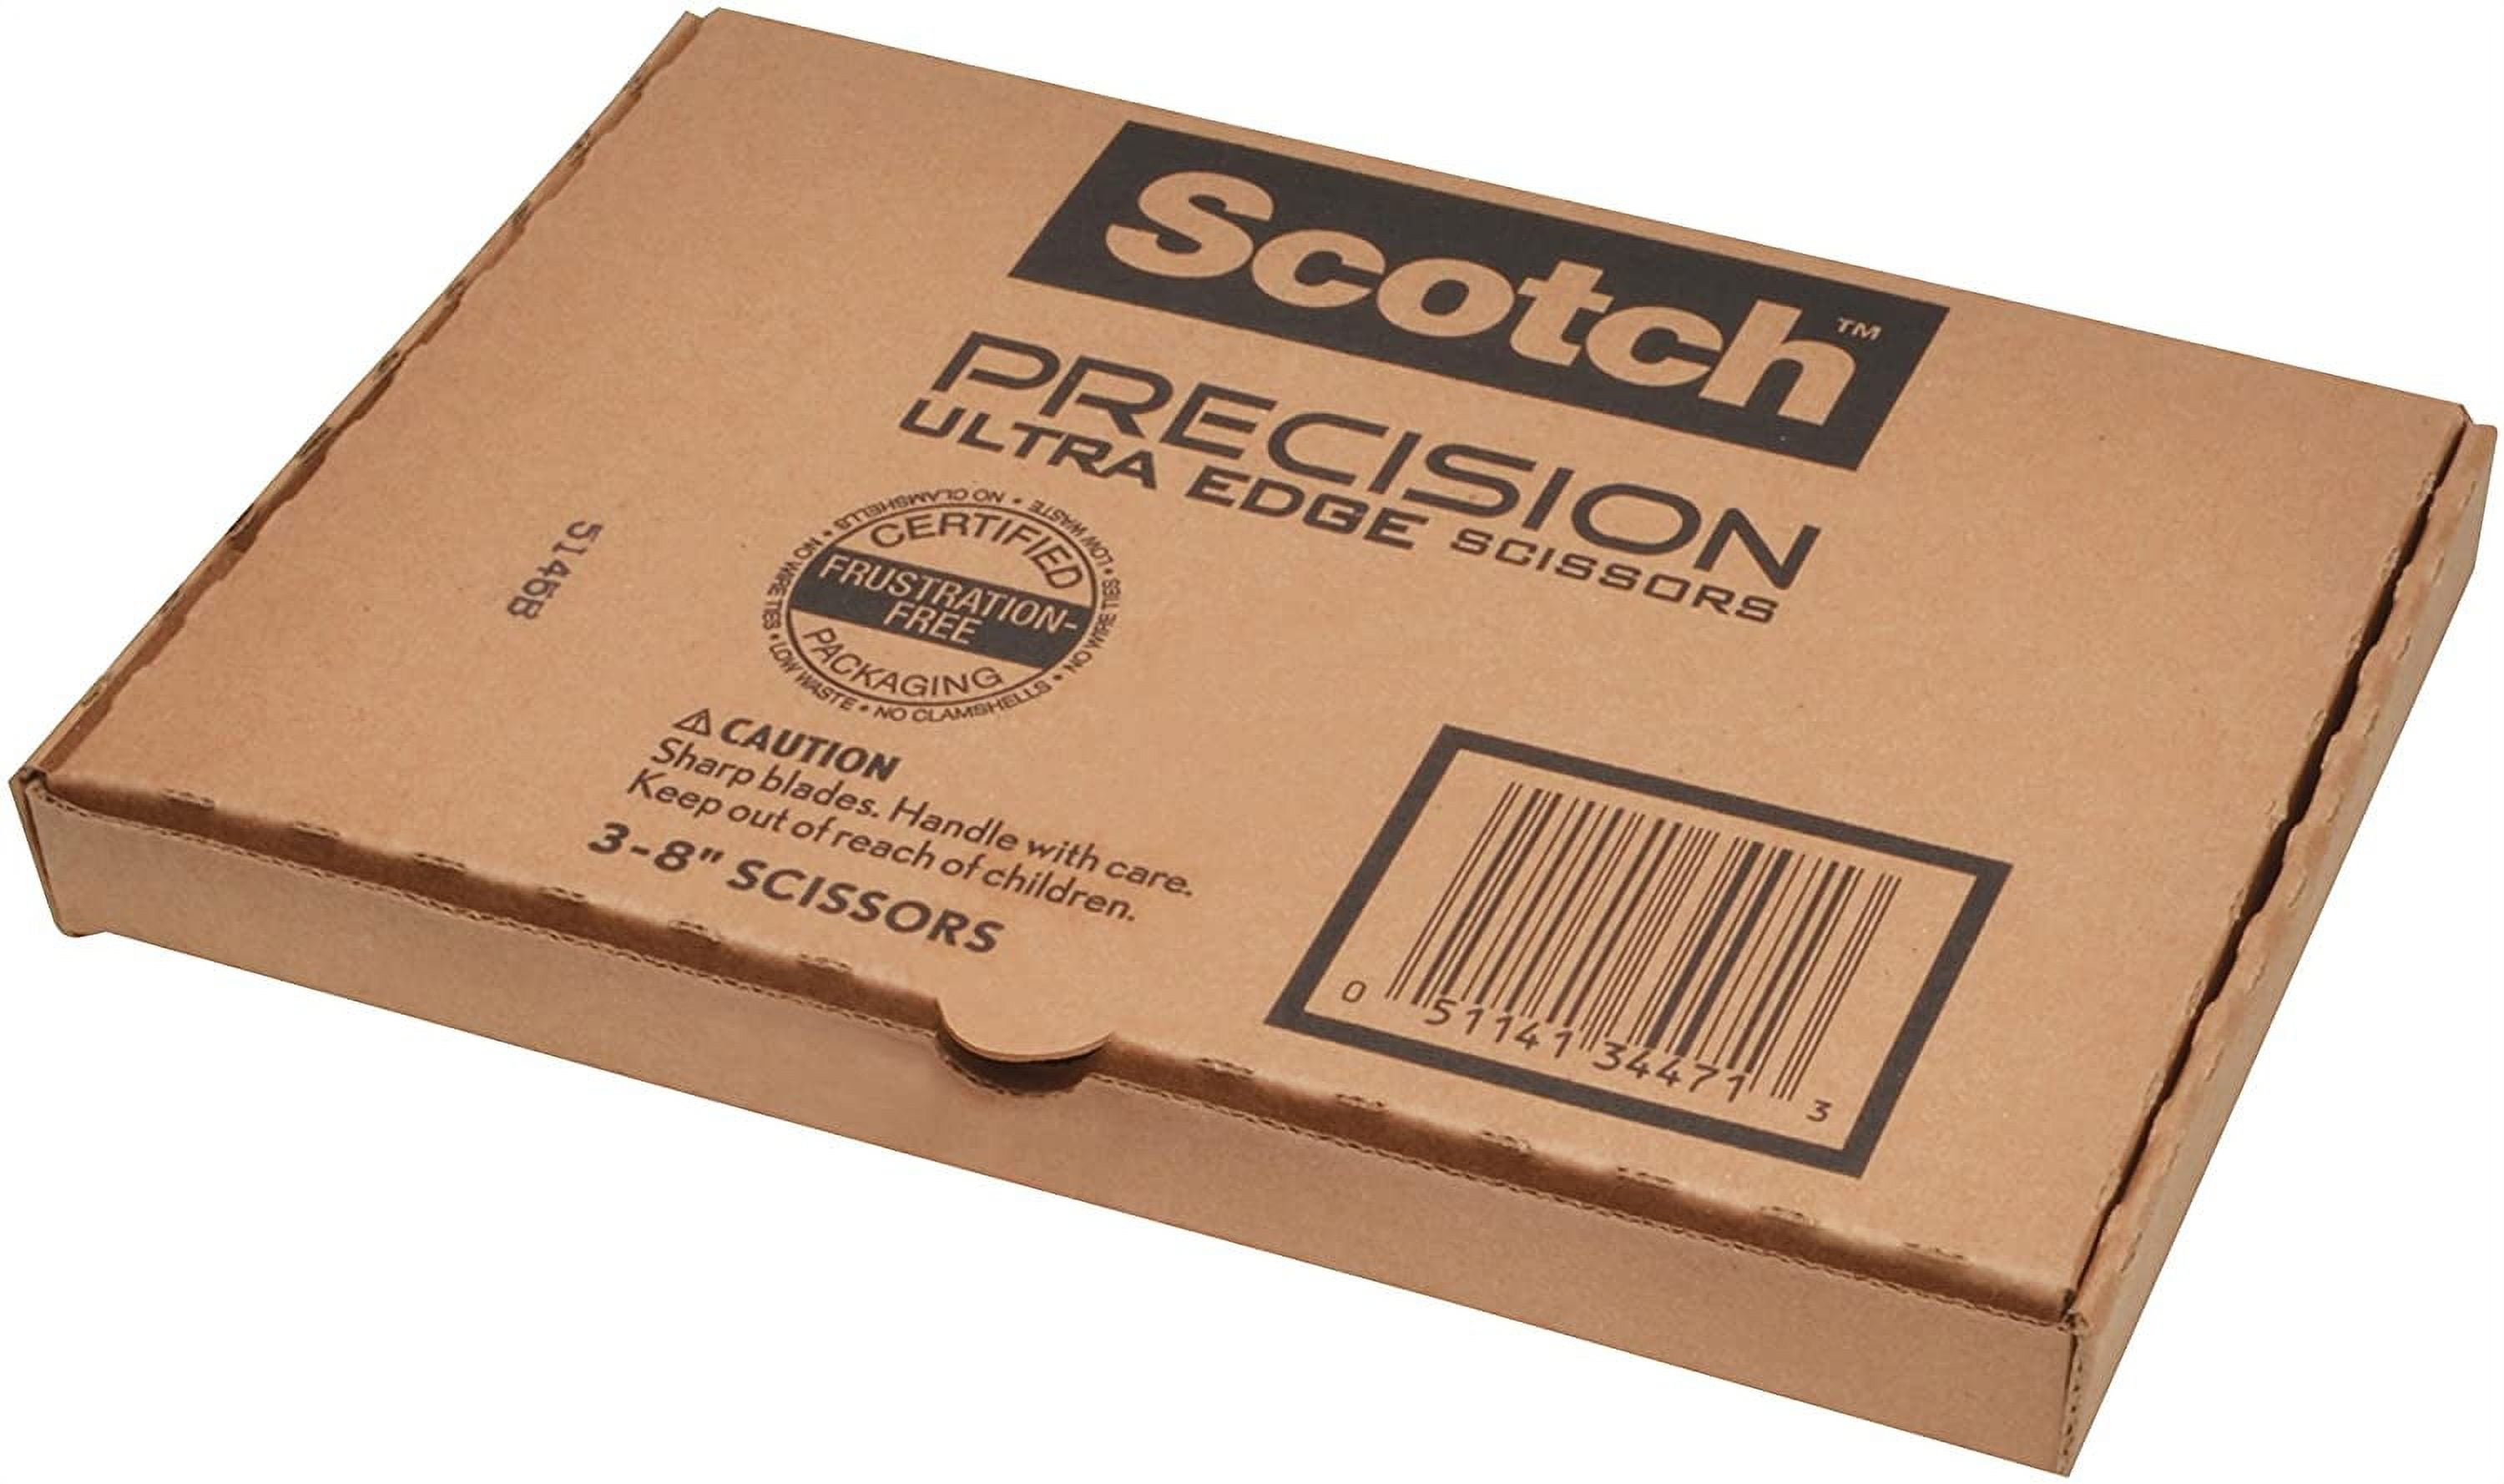 Scotch Brand Precision Ultra Edge Scissors 8 Inch 3-Pack (1458